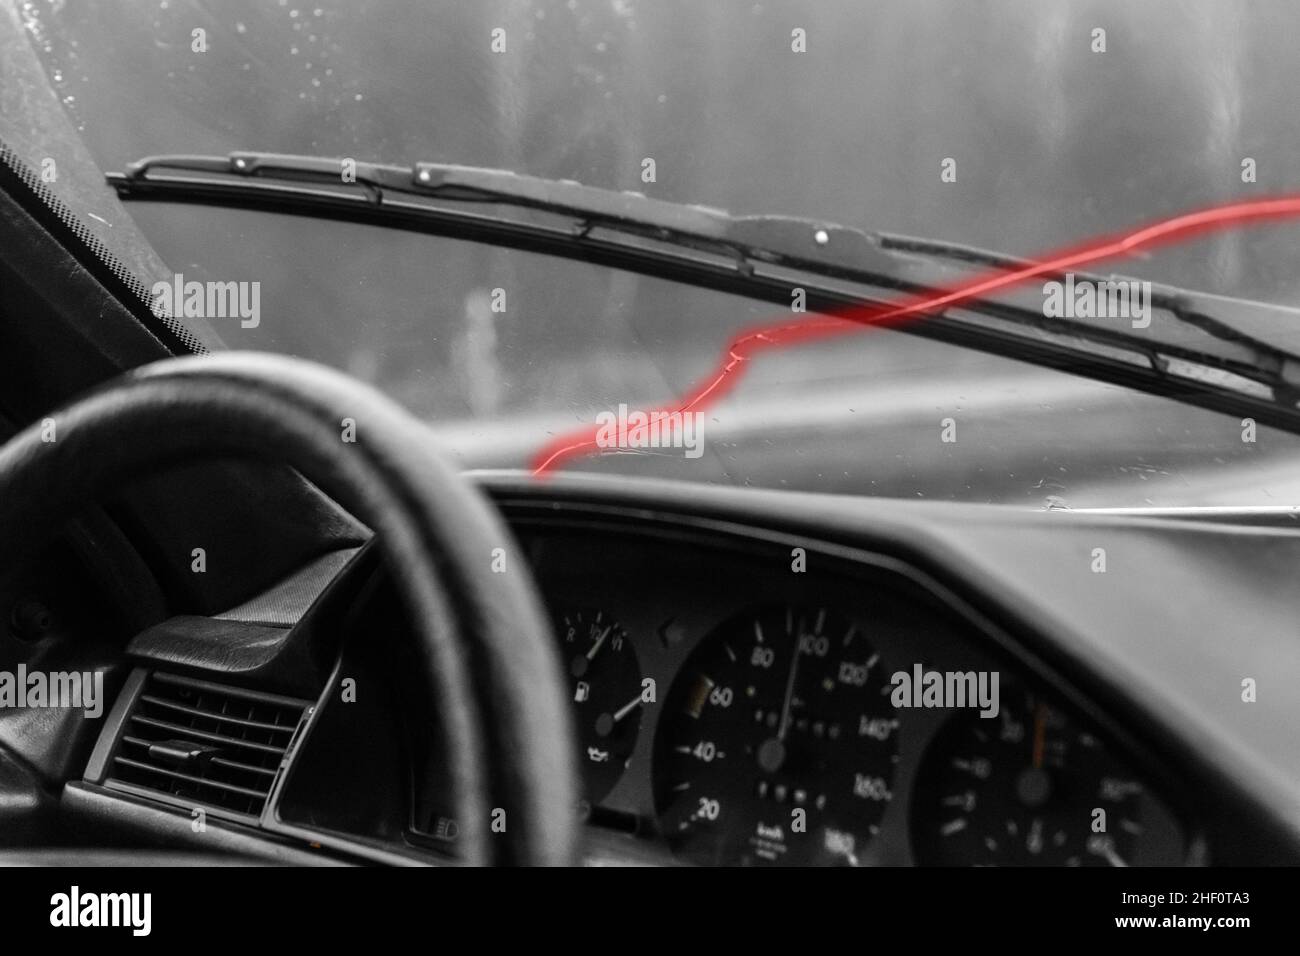 Incrinatura sul parabrezza rottura del cristallo del finestrino della vettura danni alla vettura. Foto Stock